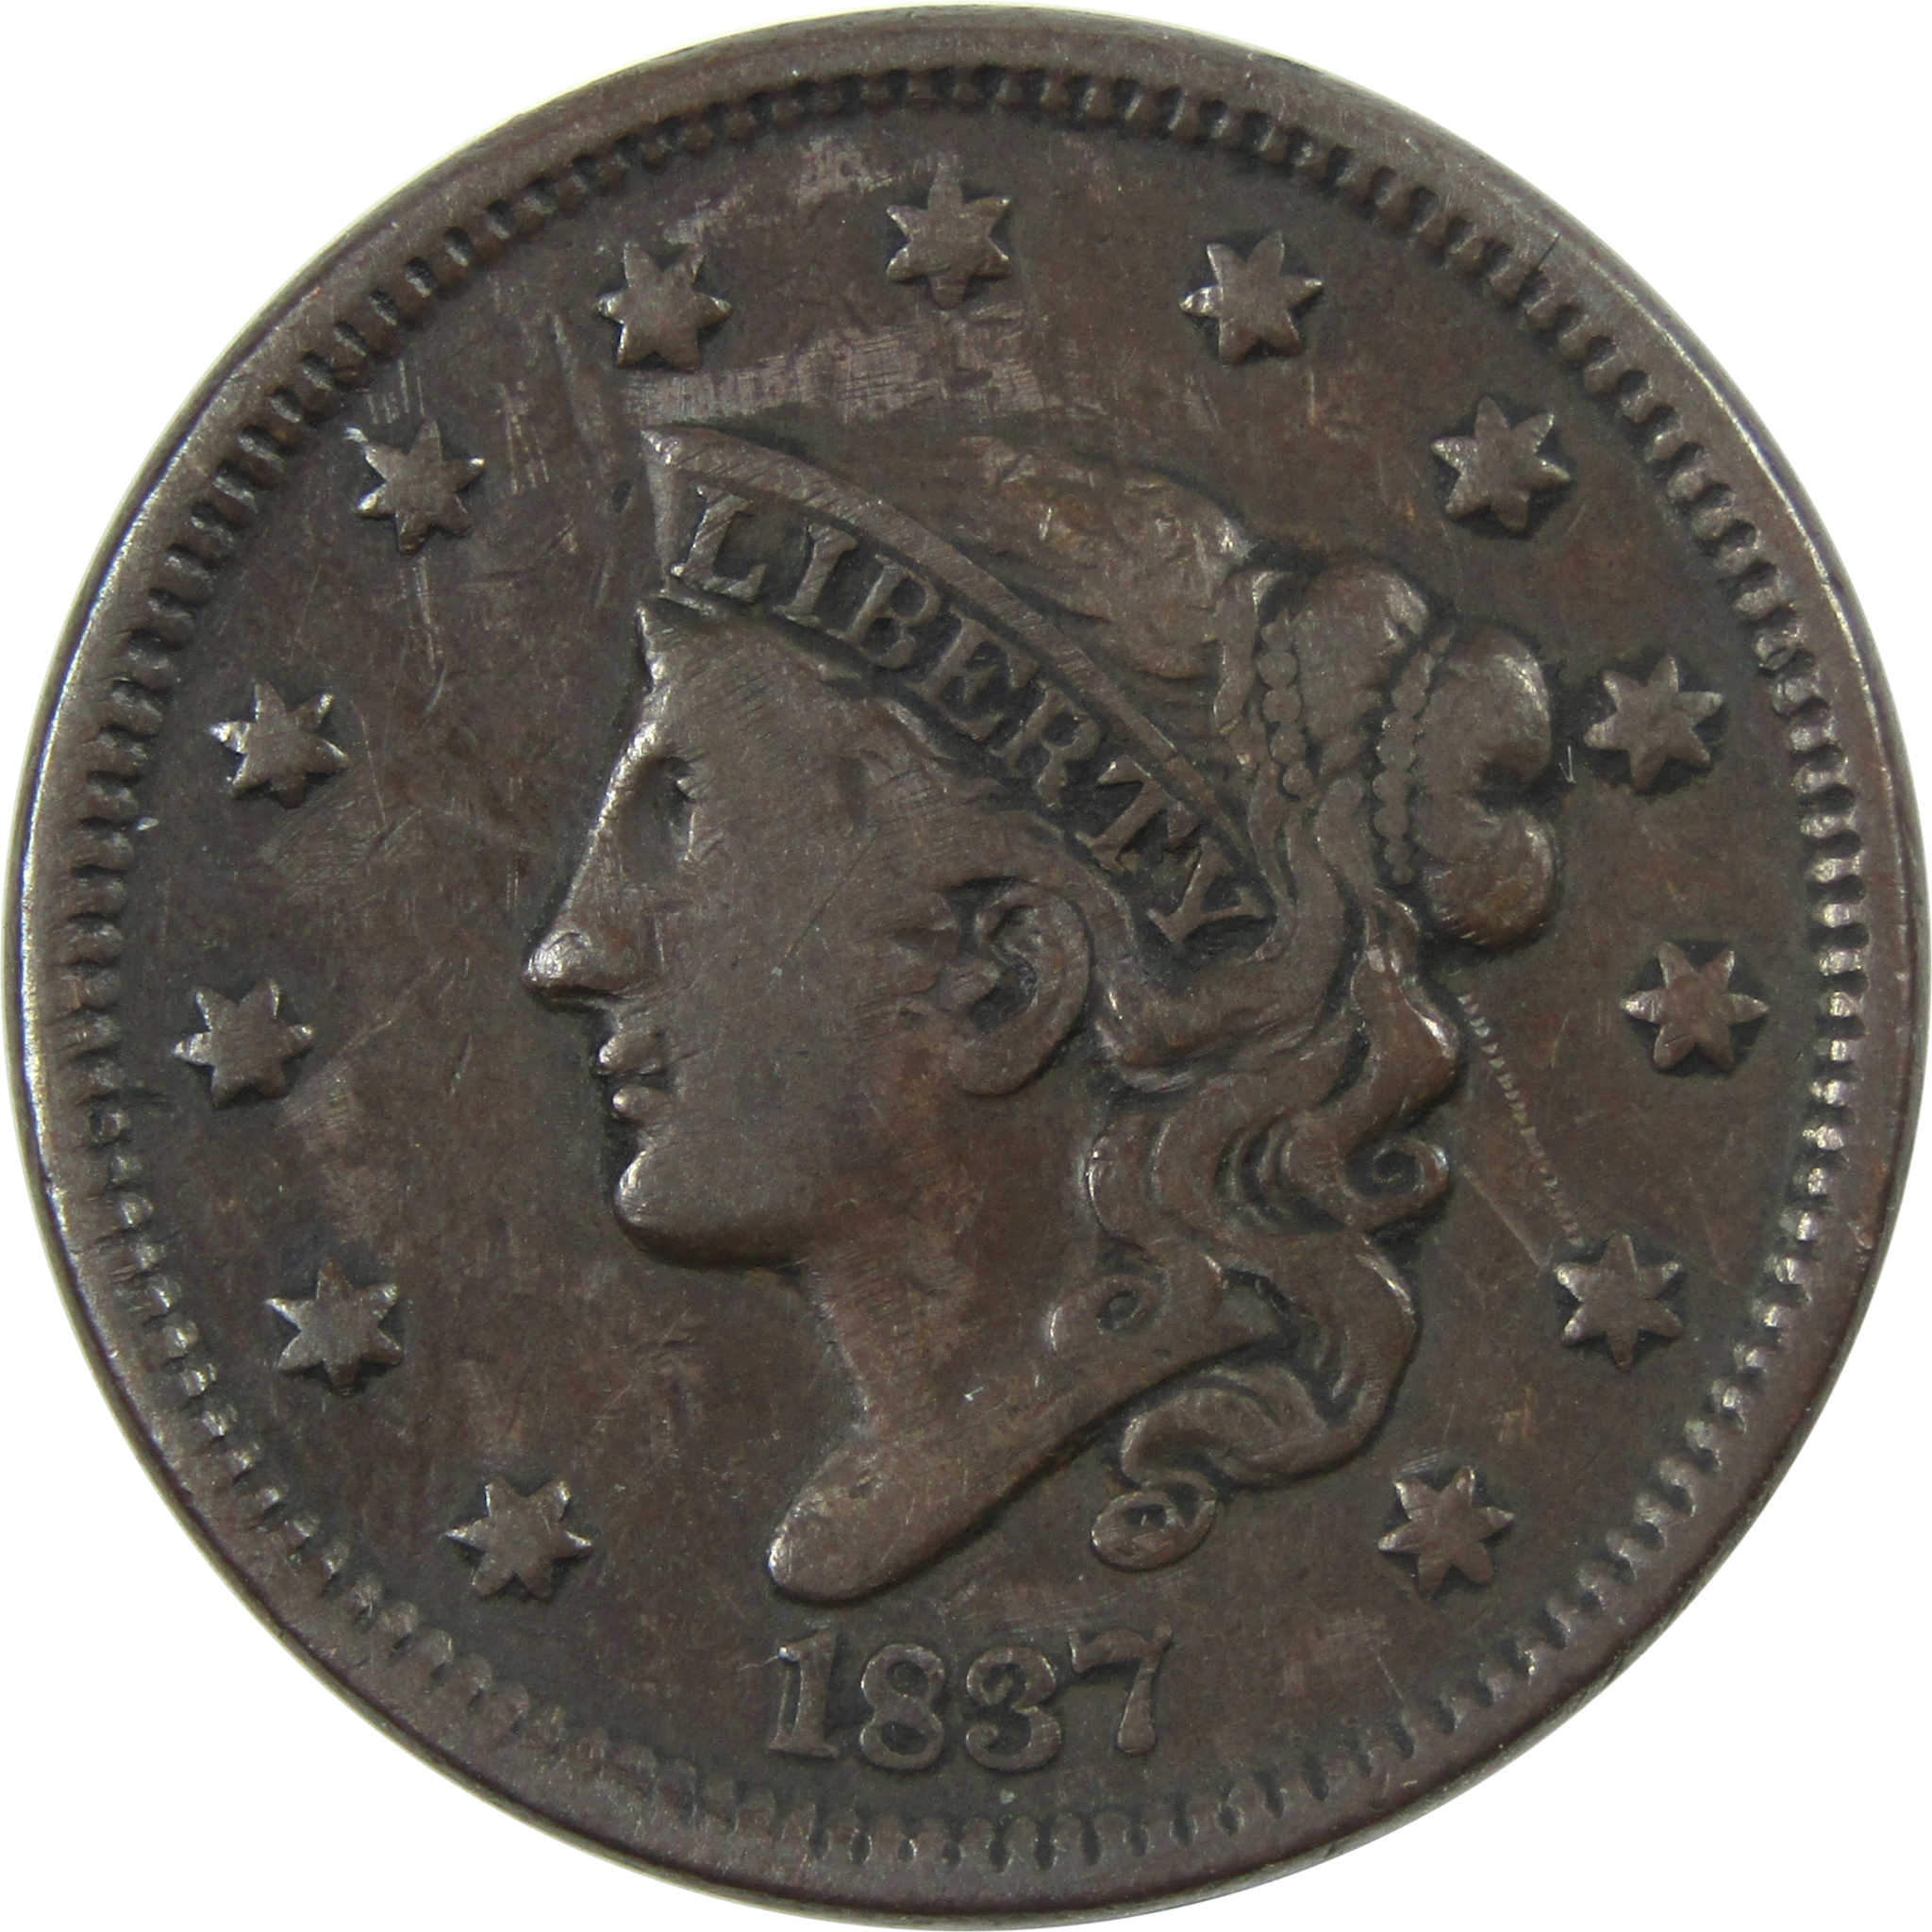 1837 Head of 1838 Beaded Cord Coronet Head Large Cent VF SKU:I13983